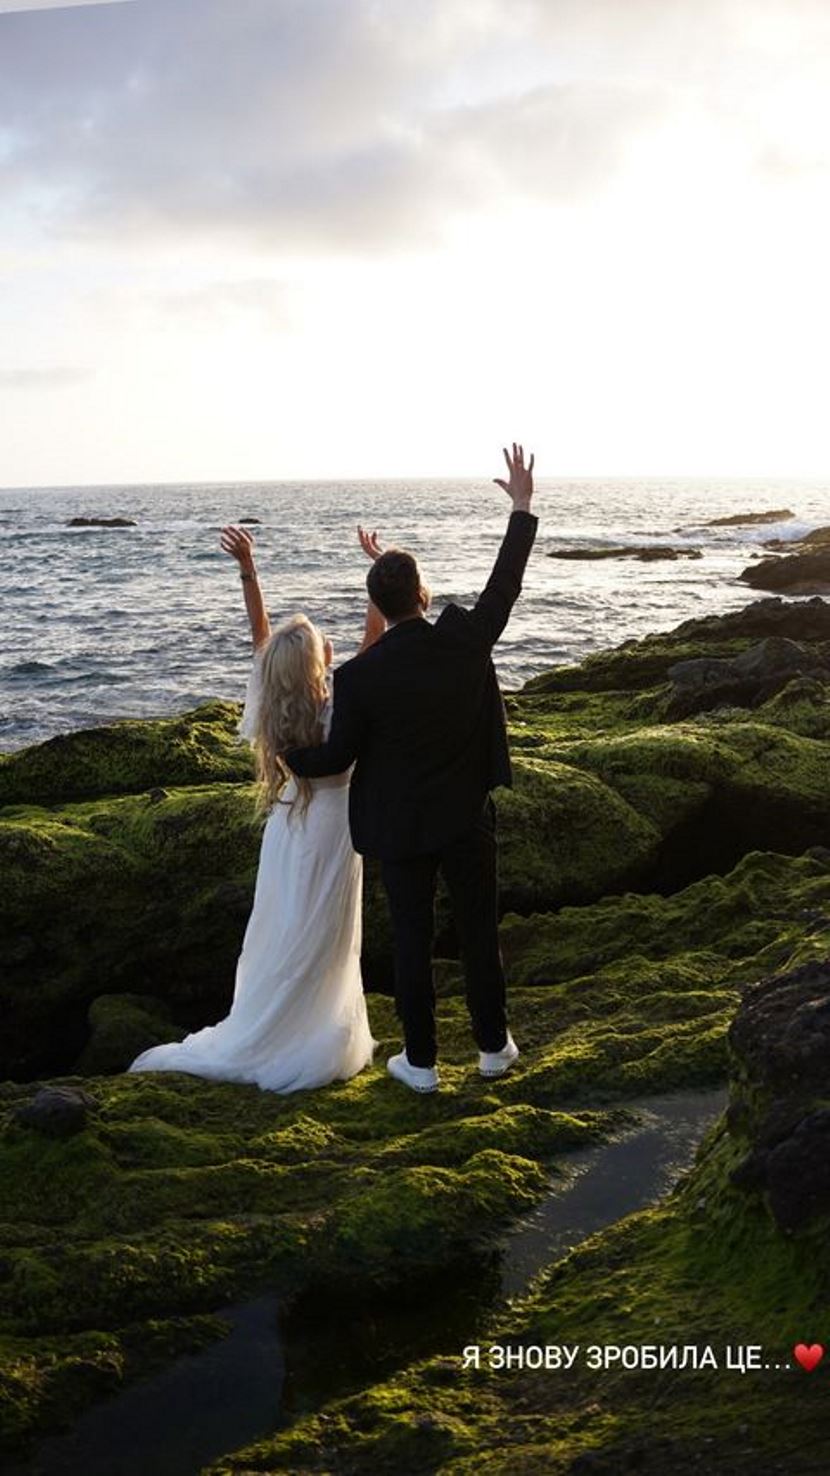 Аліна Гросу показала весільне відео: “Я знову зробила це“